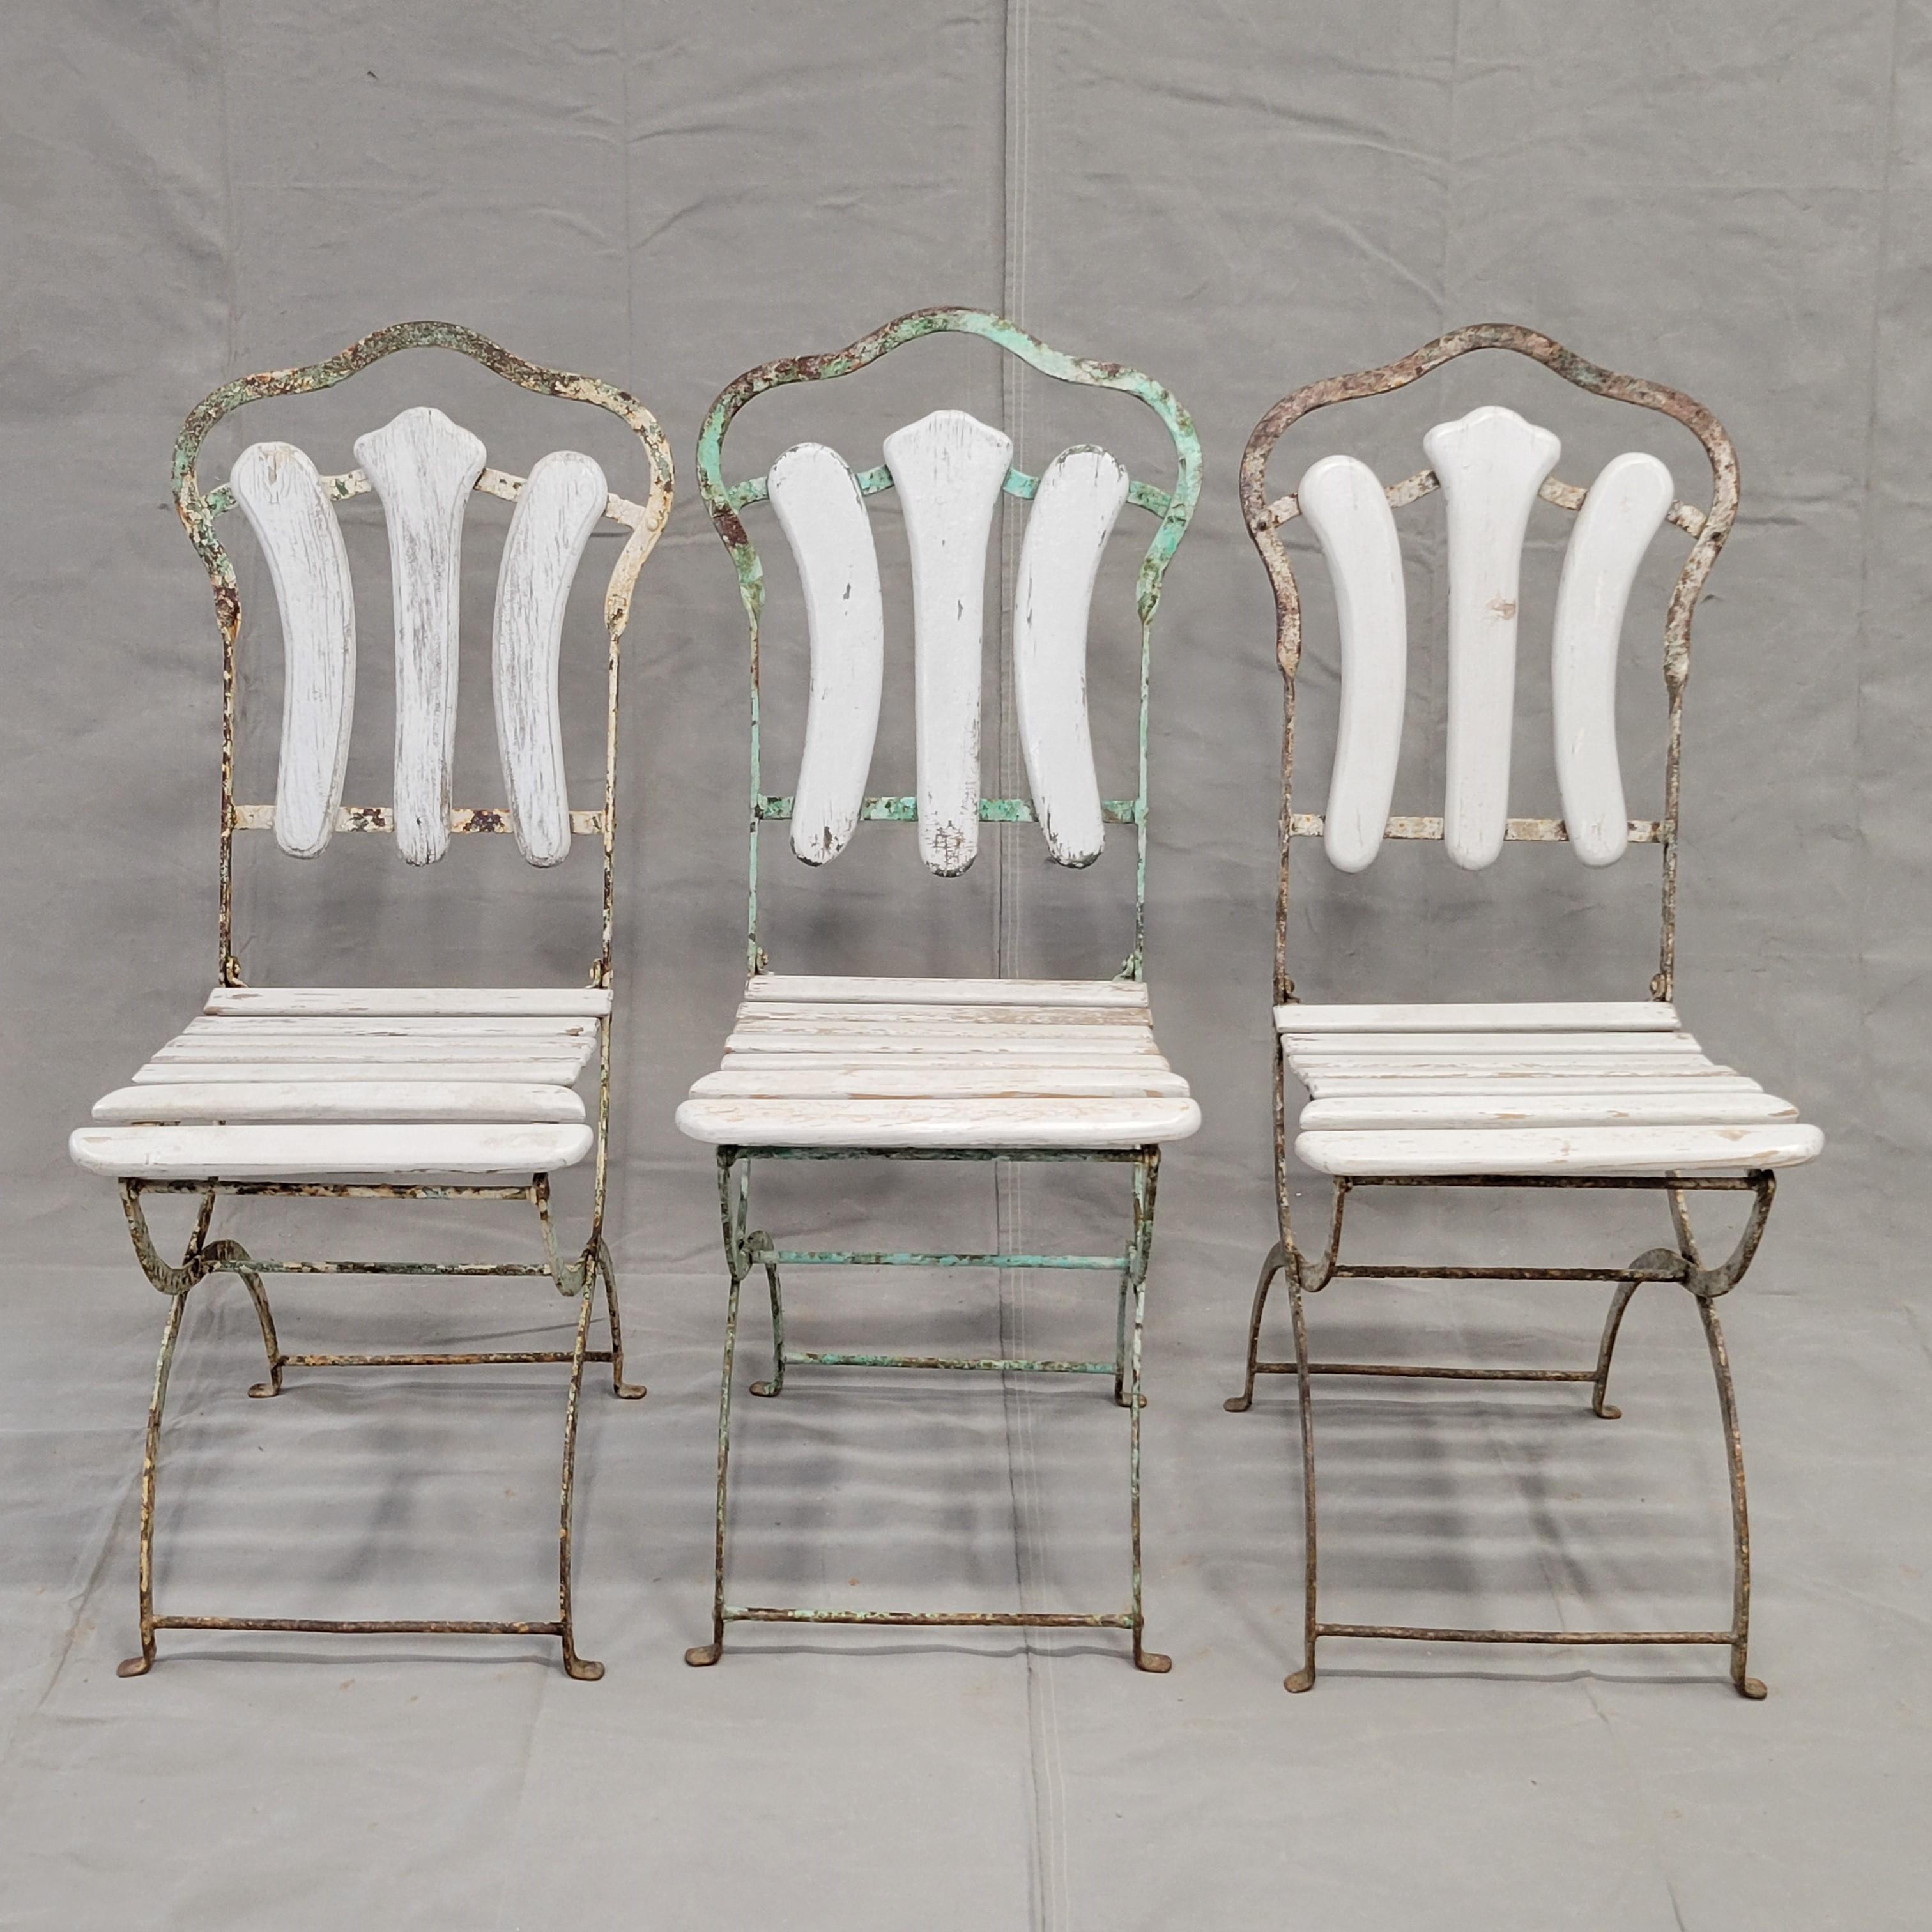 Un charmant ensemble de chaises de bistro pliantes en fer et en bois de style français ancien. La peinture écaillée et la rouille sur le fer ainsi que les intempéries sur le bois donnent un aspect rustique et shabby chic à ces objets, mais ils sont